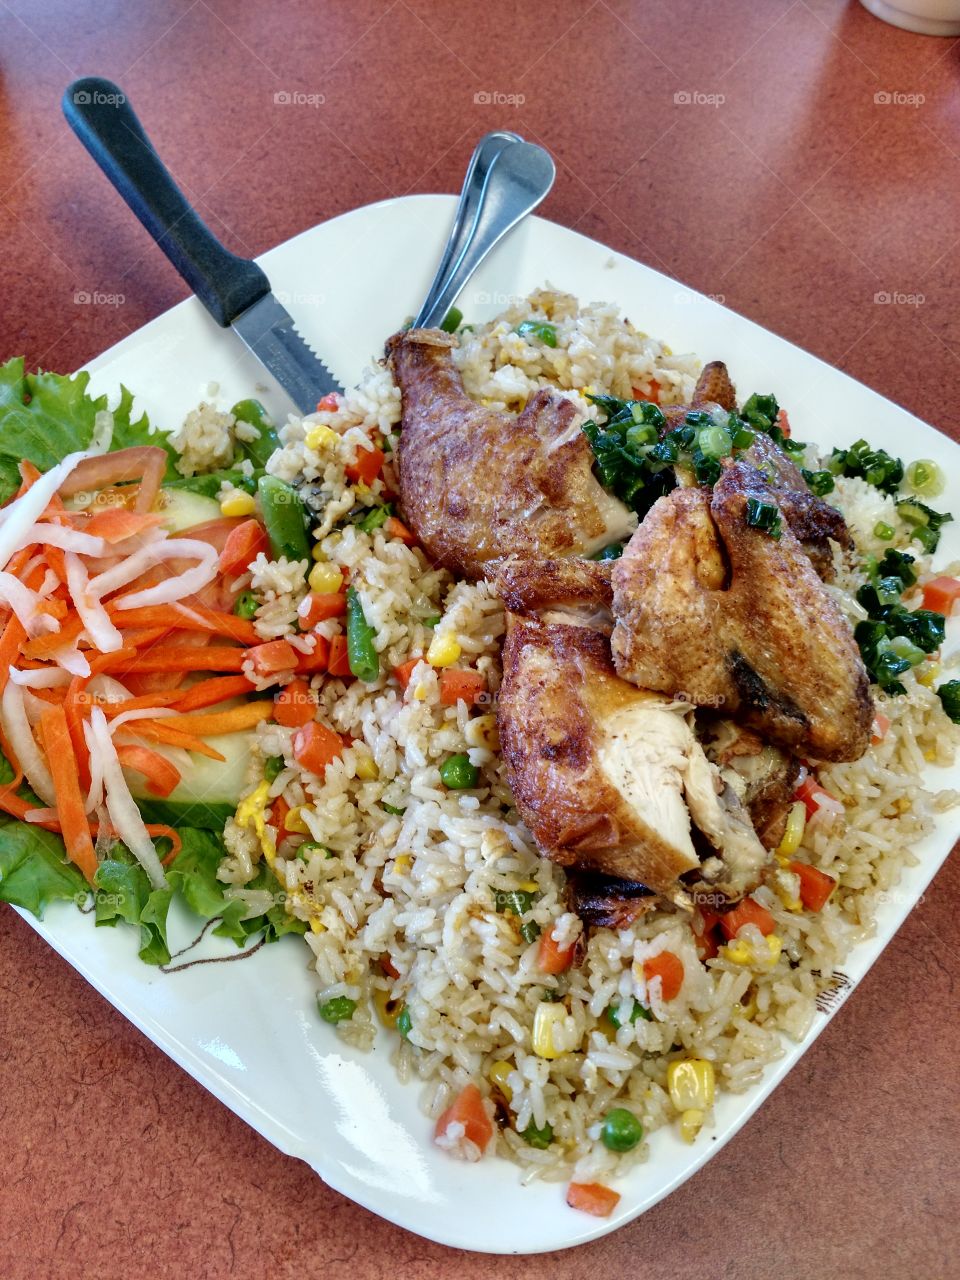 Vietnamese chicken and rice. yum!